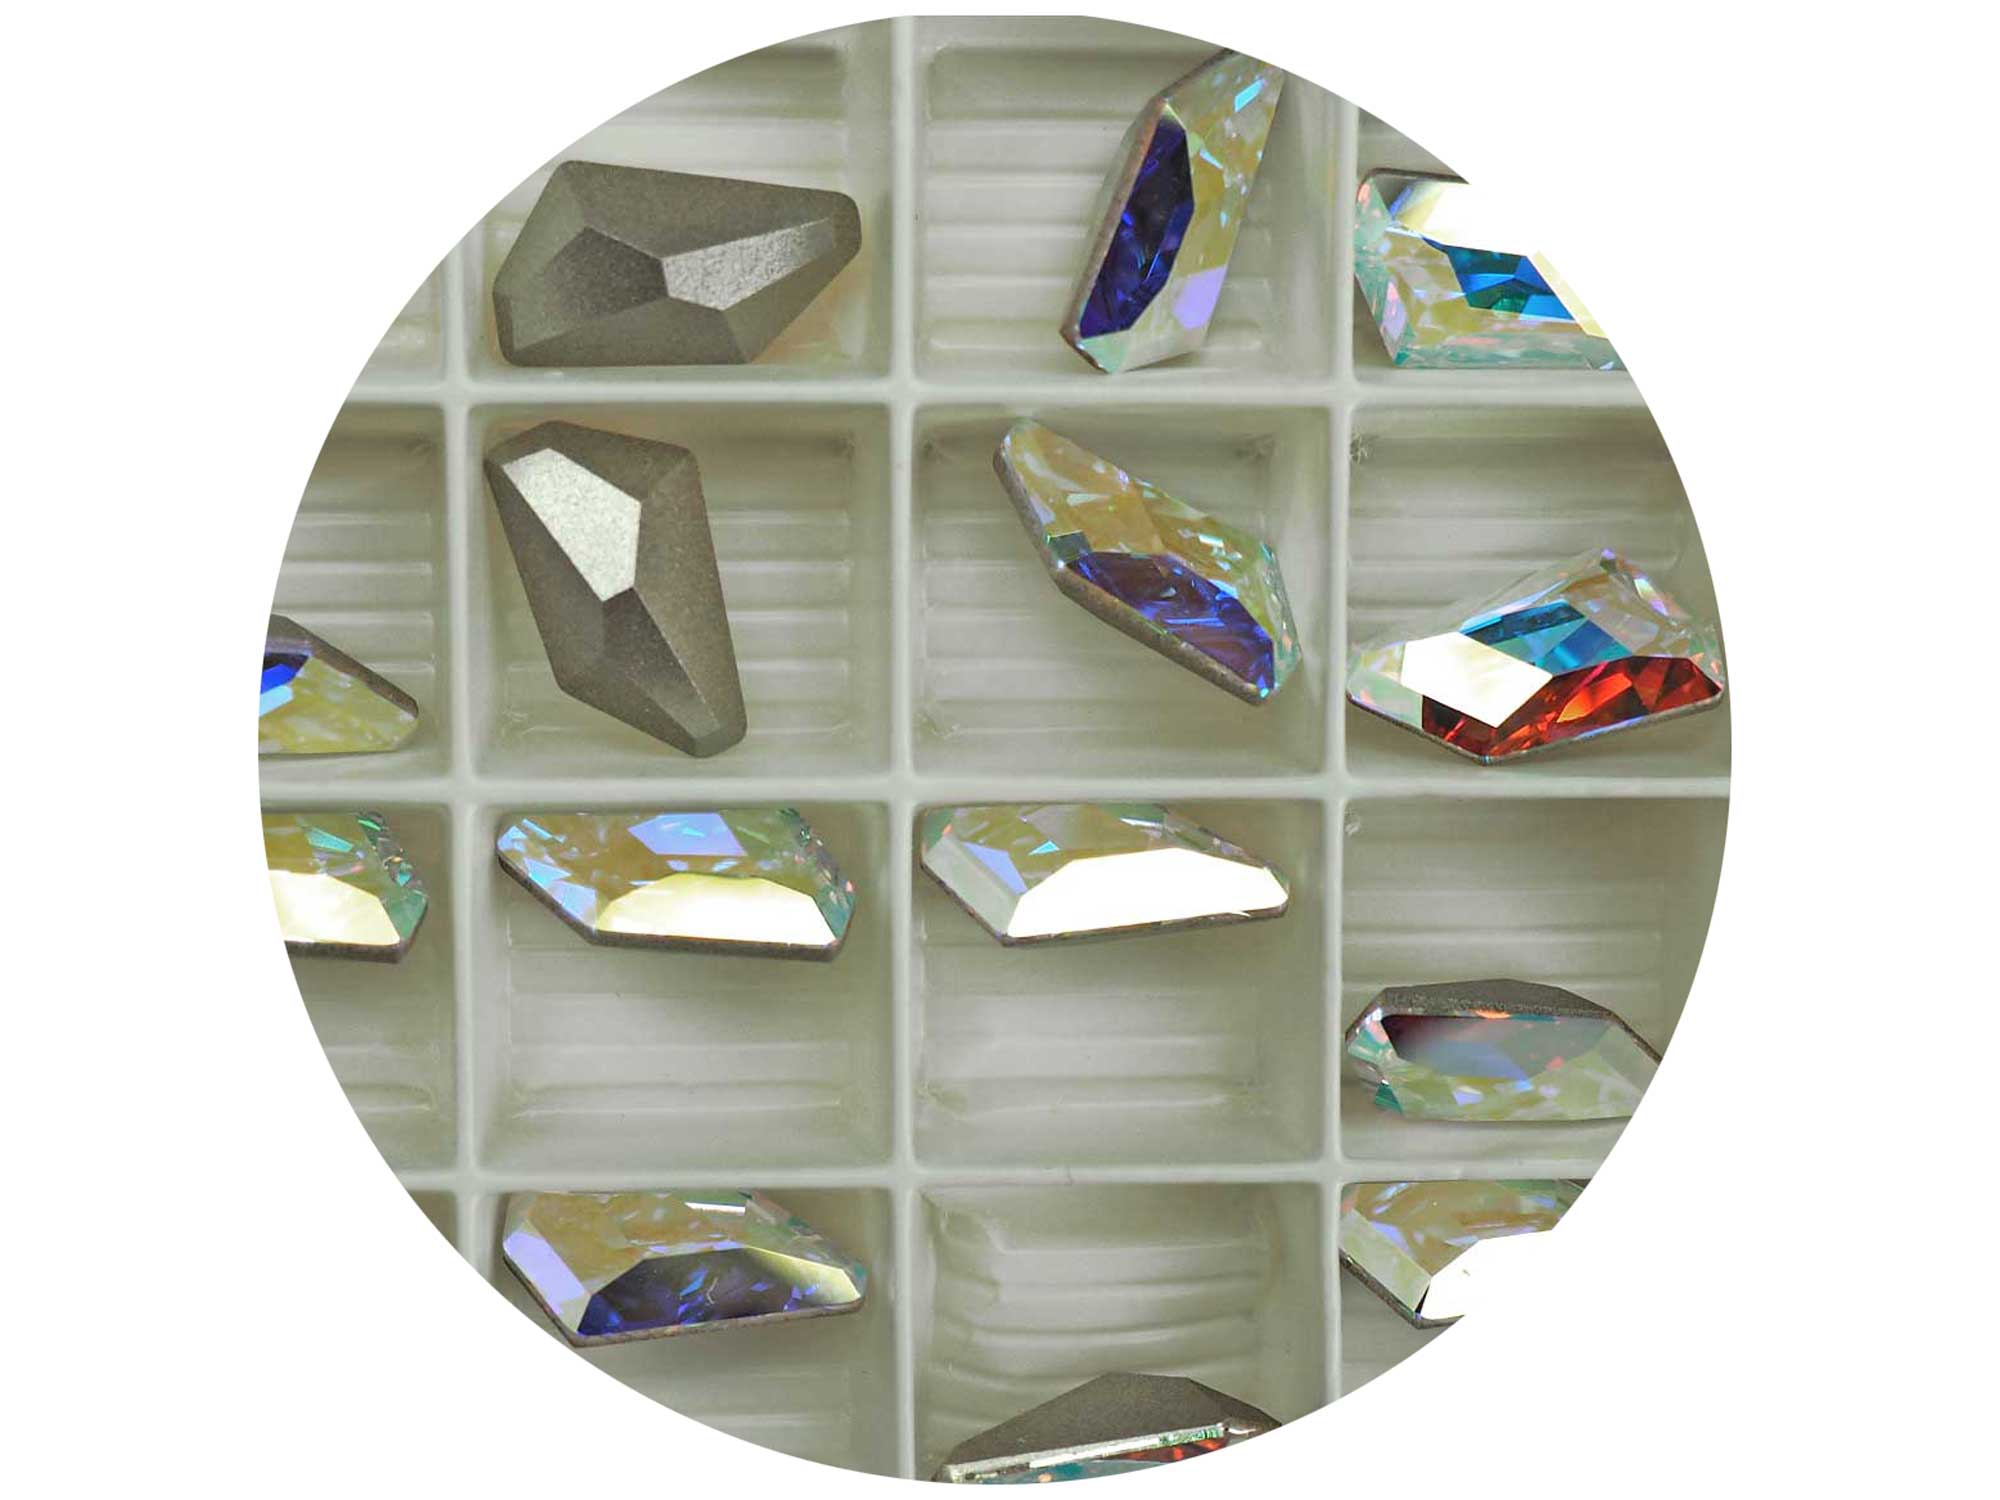 Swarovski Art.# 4767 - De-Art Fancy Stone in 18x10mm Crystal AB coated, 4 pcs